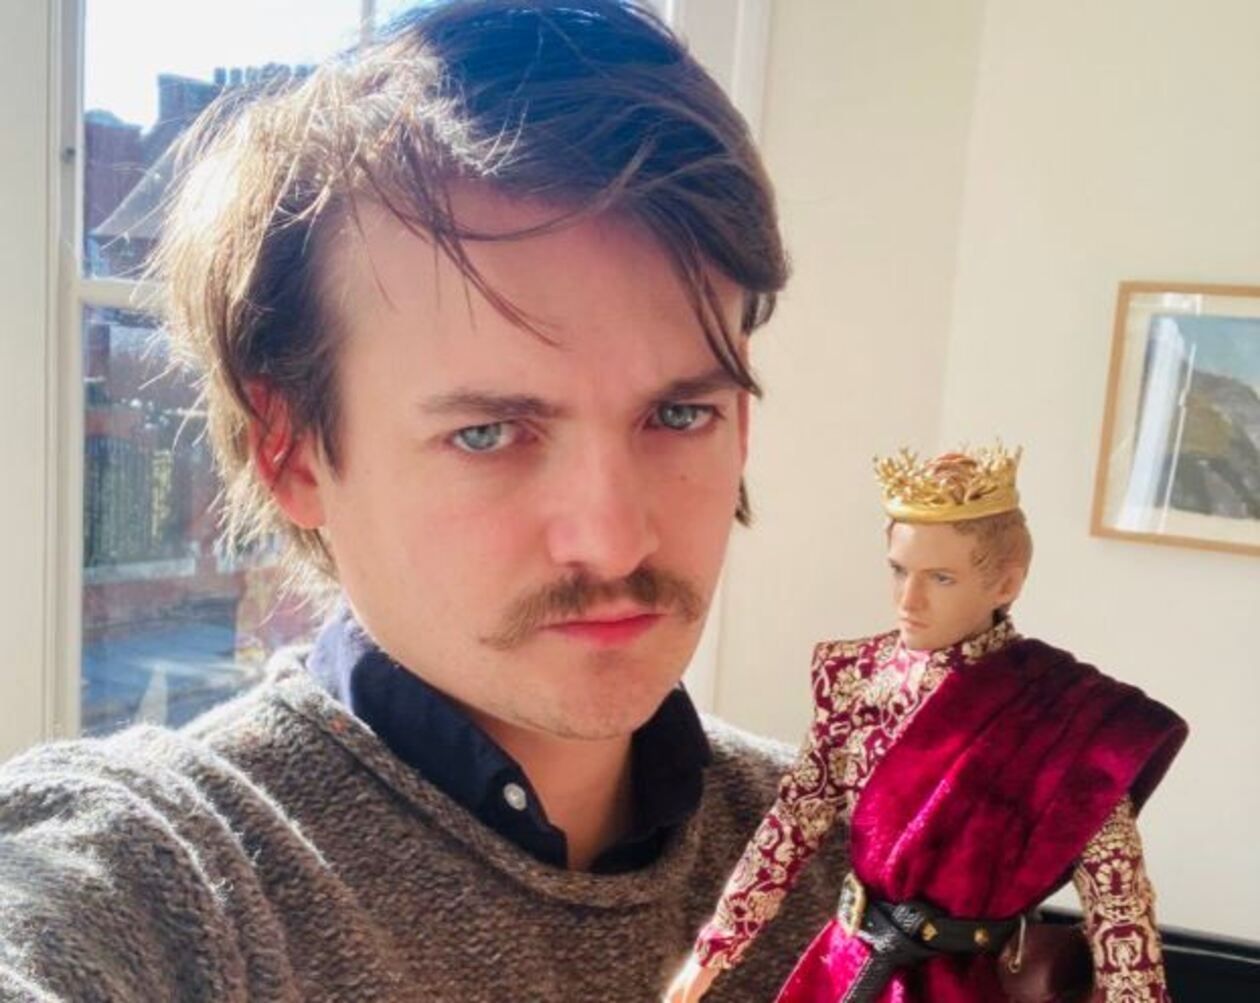 Джек Глисон выставил на аукцион статуэтку короля Джоффри из Игры престолов - детали - Кино